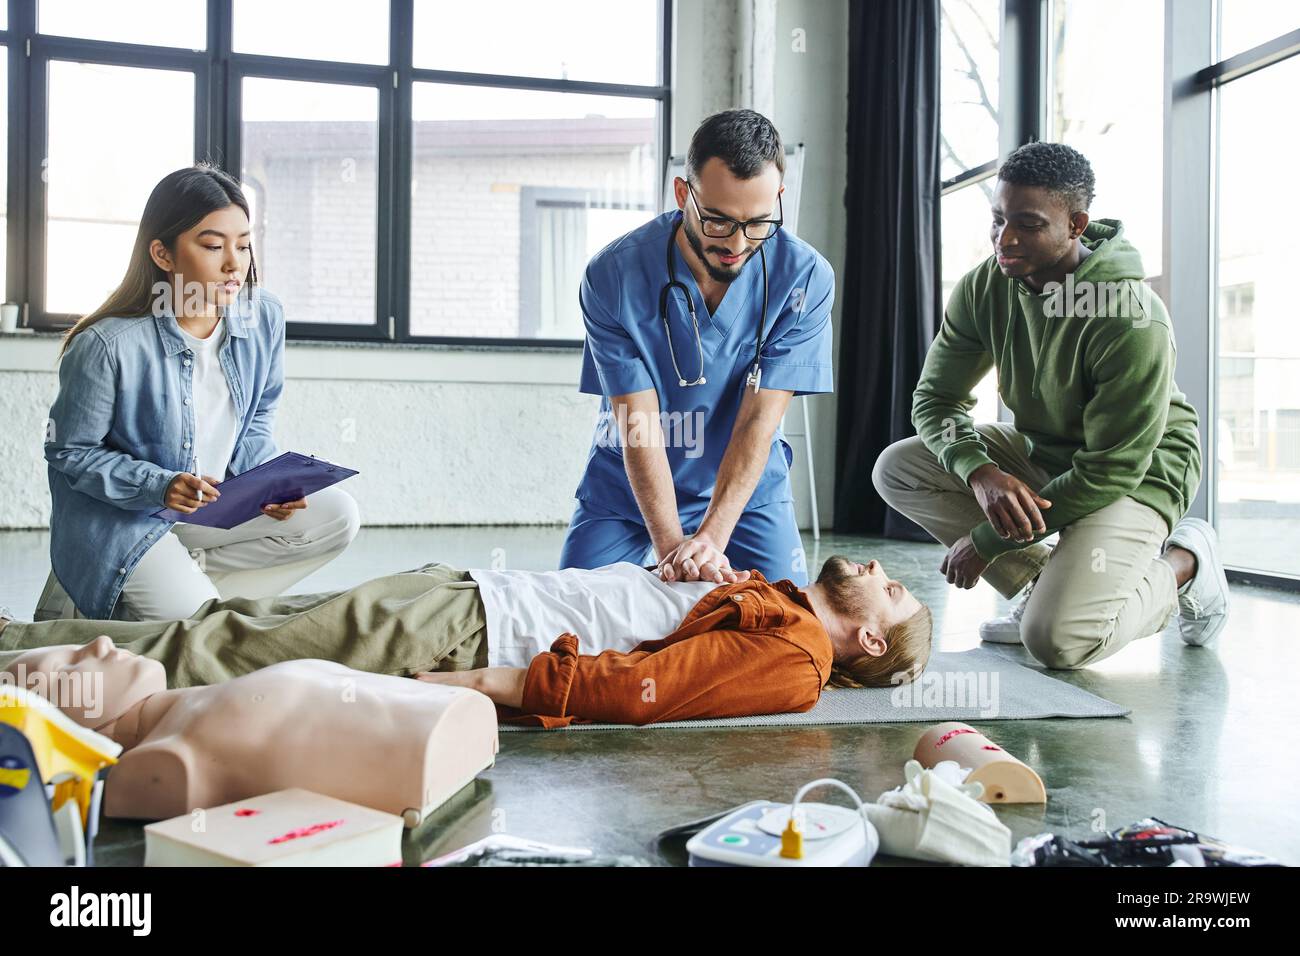 Professionnel paramédical pratiquant des compressions thoraciques sur l'homme près du mannequin de RCP, de l'équipement médical et des participants multiethniques de la sém de formation de premiers soins Banque D'Images